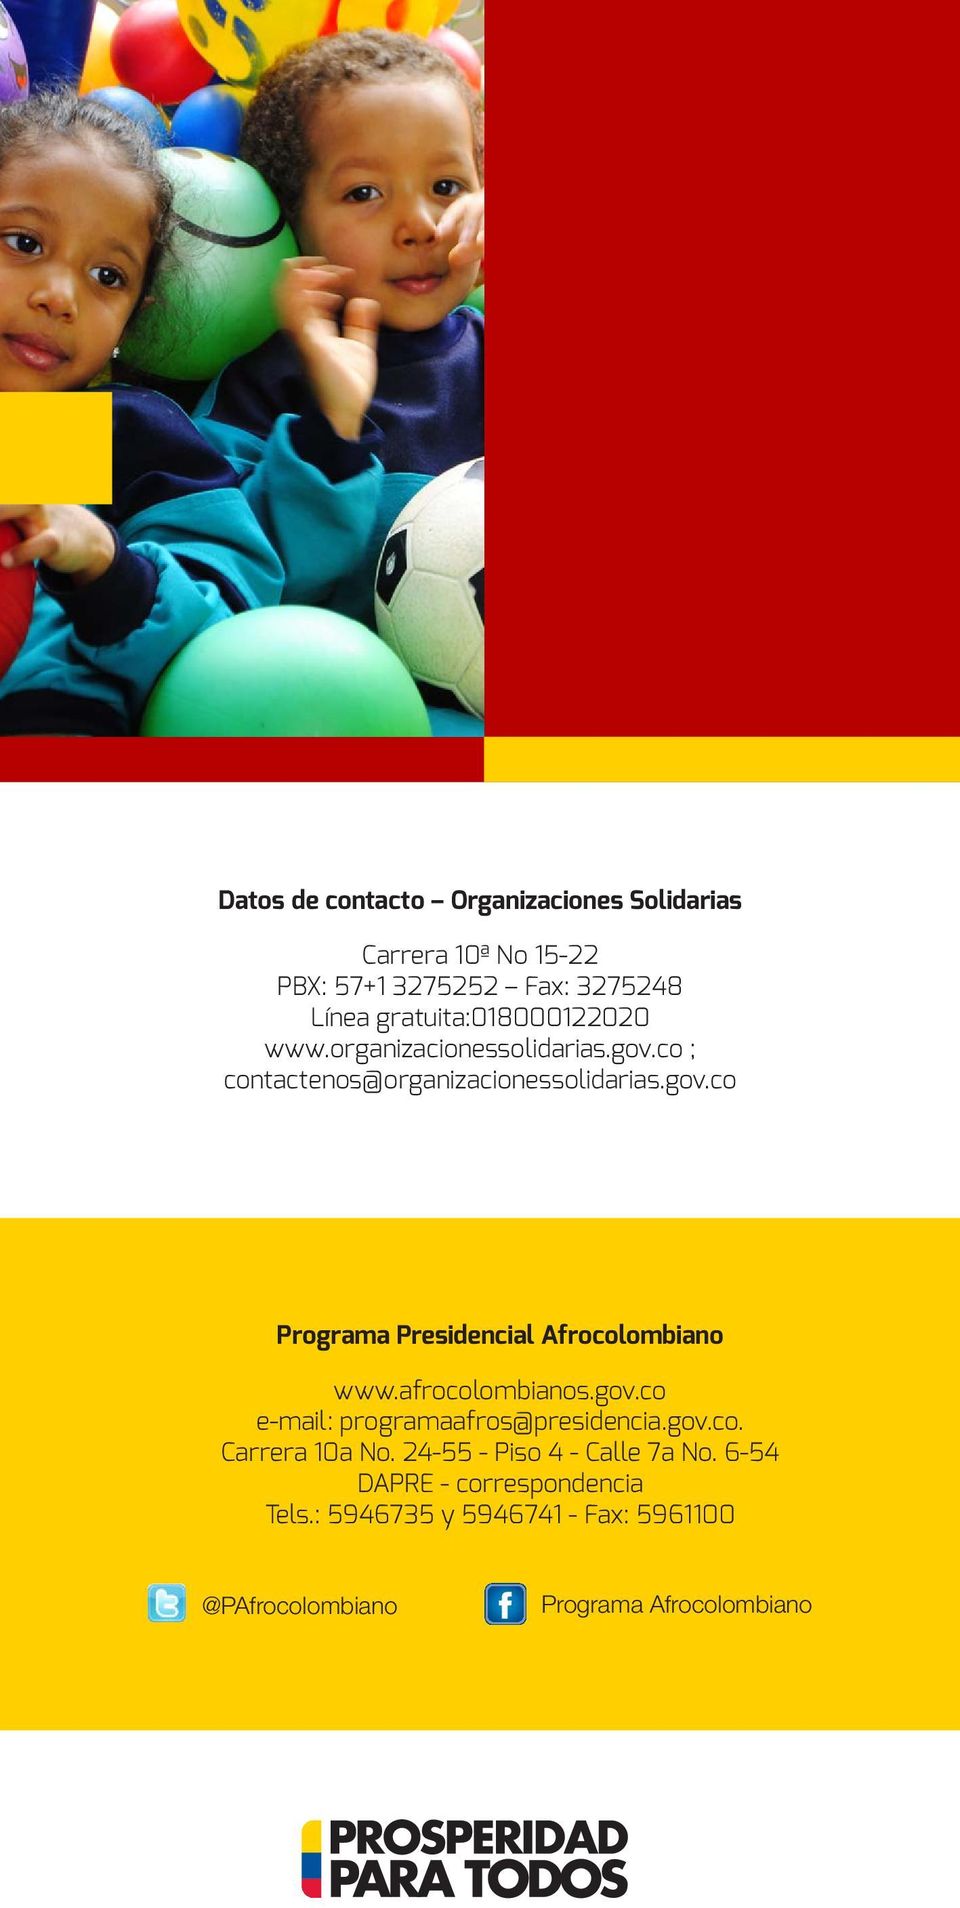 afrocolombianos.gov.co e-mail: programaafros@presidencia.gov.co. Carrera 10a No. 24-55 - Piso 4 - Calle 7a No.